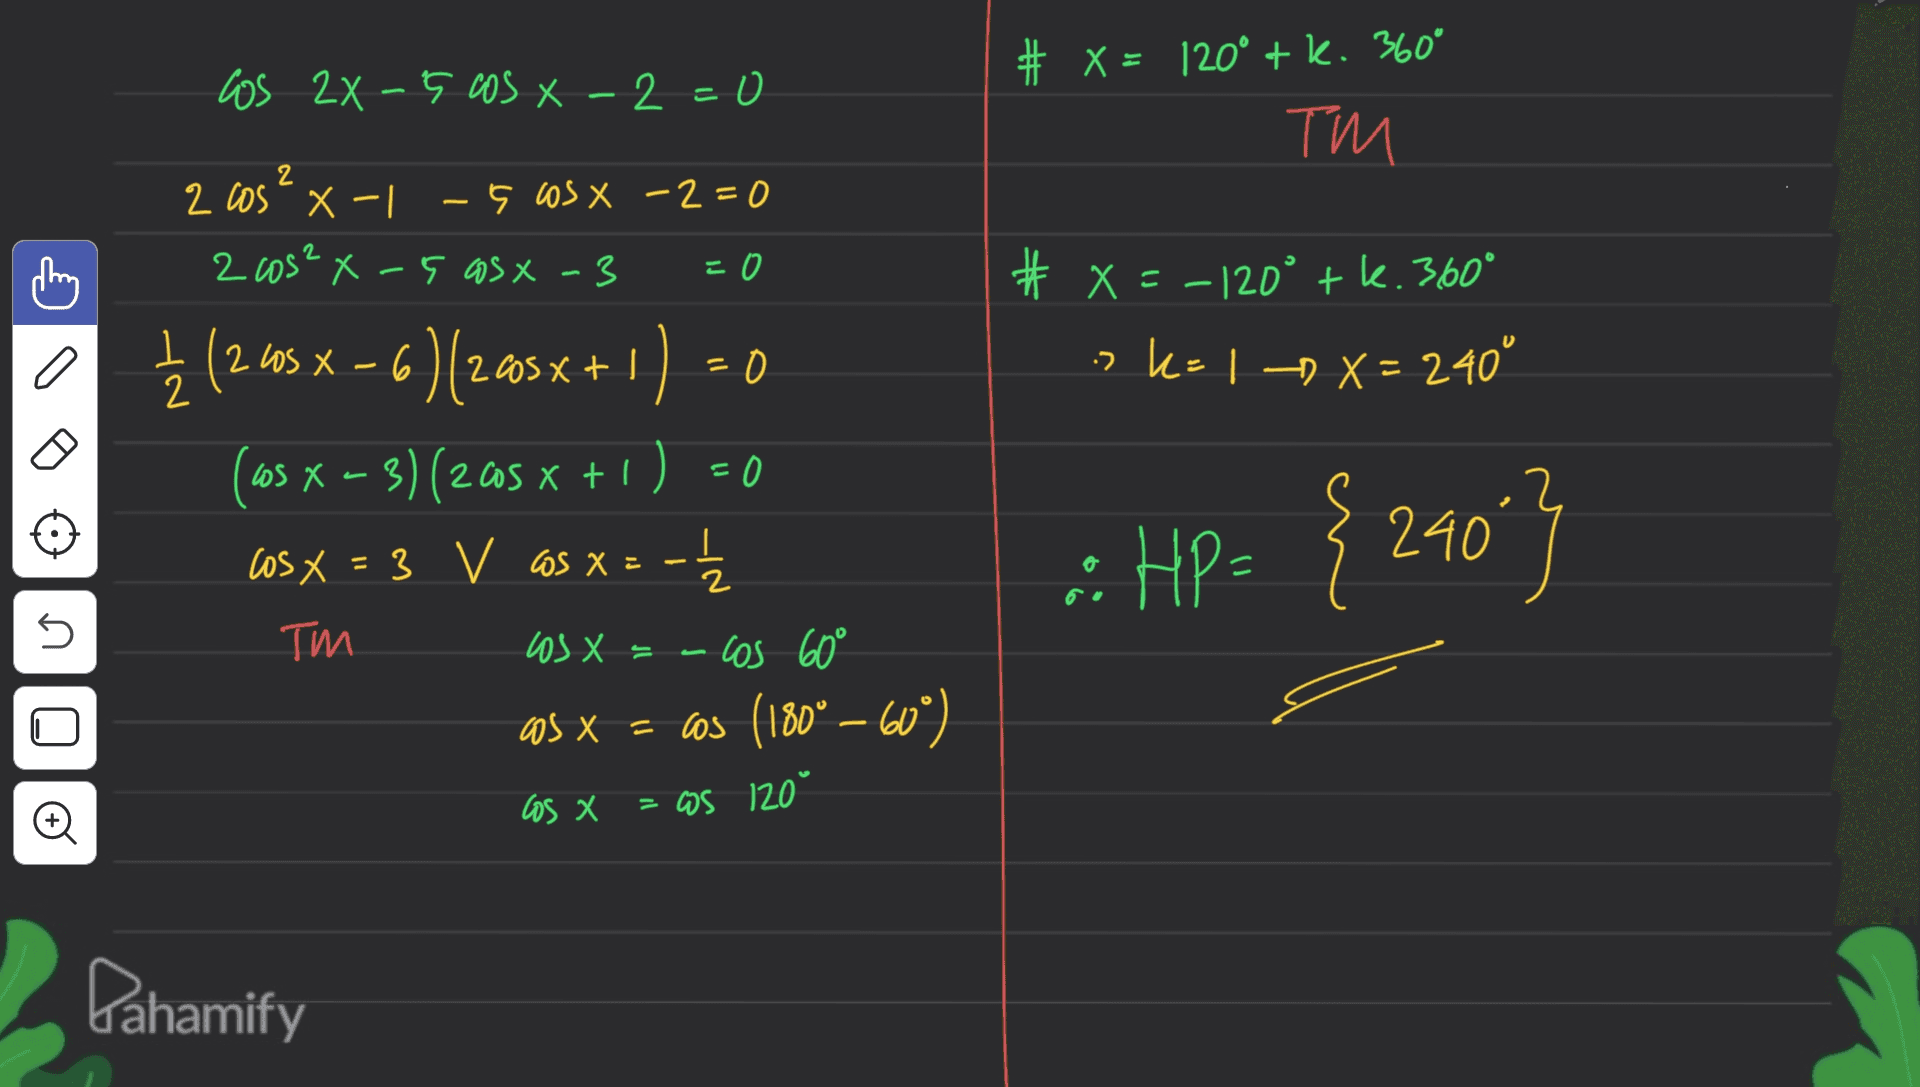 los 2x 5 cos X -2=0 # X = 120° + k. 360° TM 2 2 cos - x -1 -5 cos x -2=0 2 cos²x-5 asx - 3 =0 # x=-120° tk. 360° a 2 0 :> K= 1 ) X = 240° 2 = { (2.45 X – 6 )(2.40sx + 1) 0 (105 x – 3) (205 x + 1) = 0 cosx = 3 V cos x = -1 = 3 V X cos 60° as x = cos (180° – 60°) I :: HP= { 24043 = s ТИИ los X = o los X = CS 120° Pahamify 